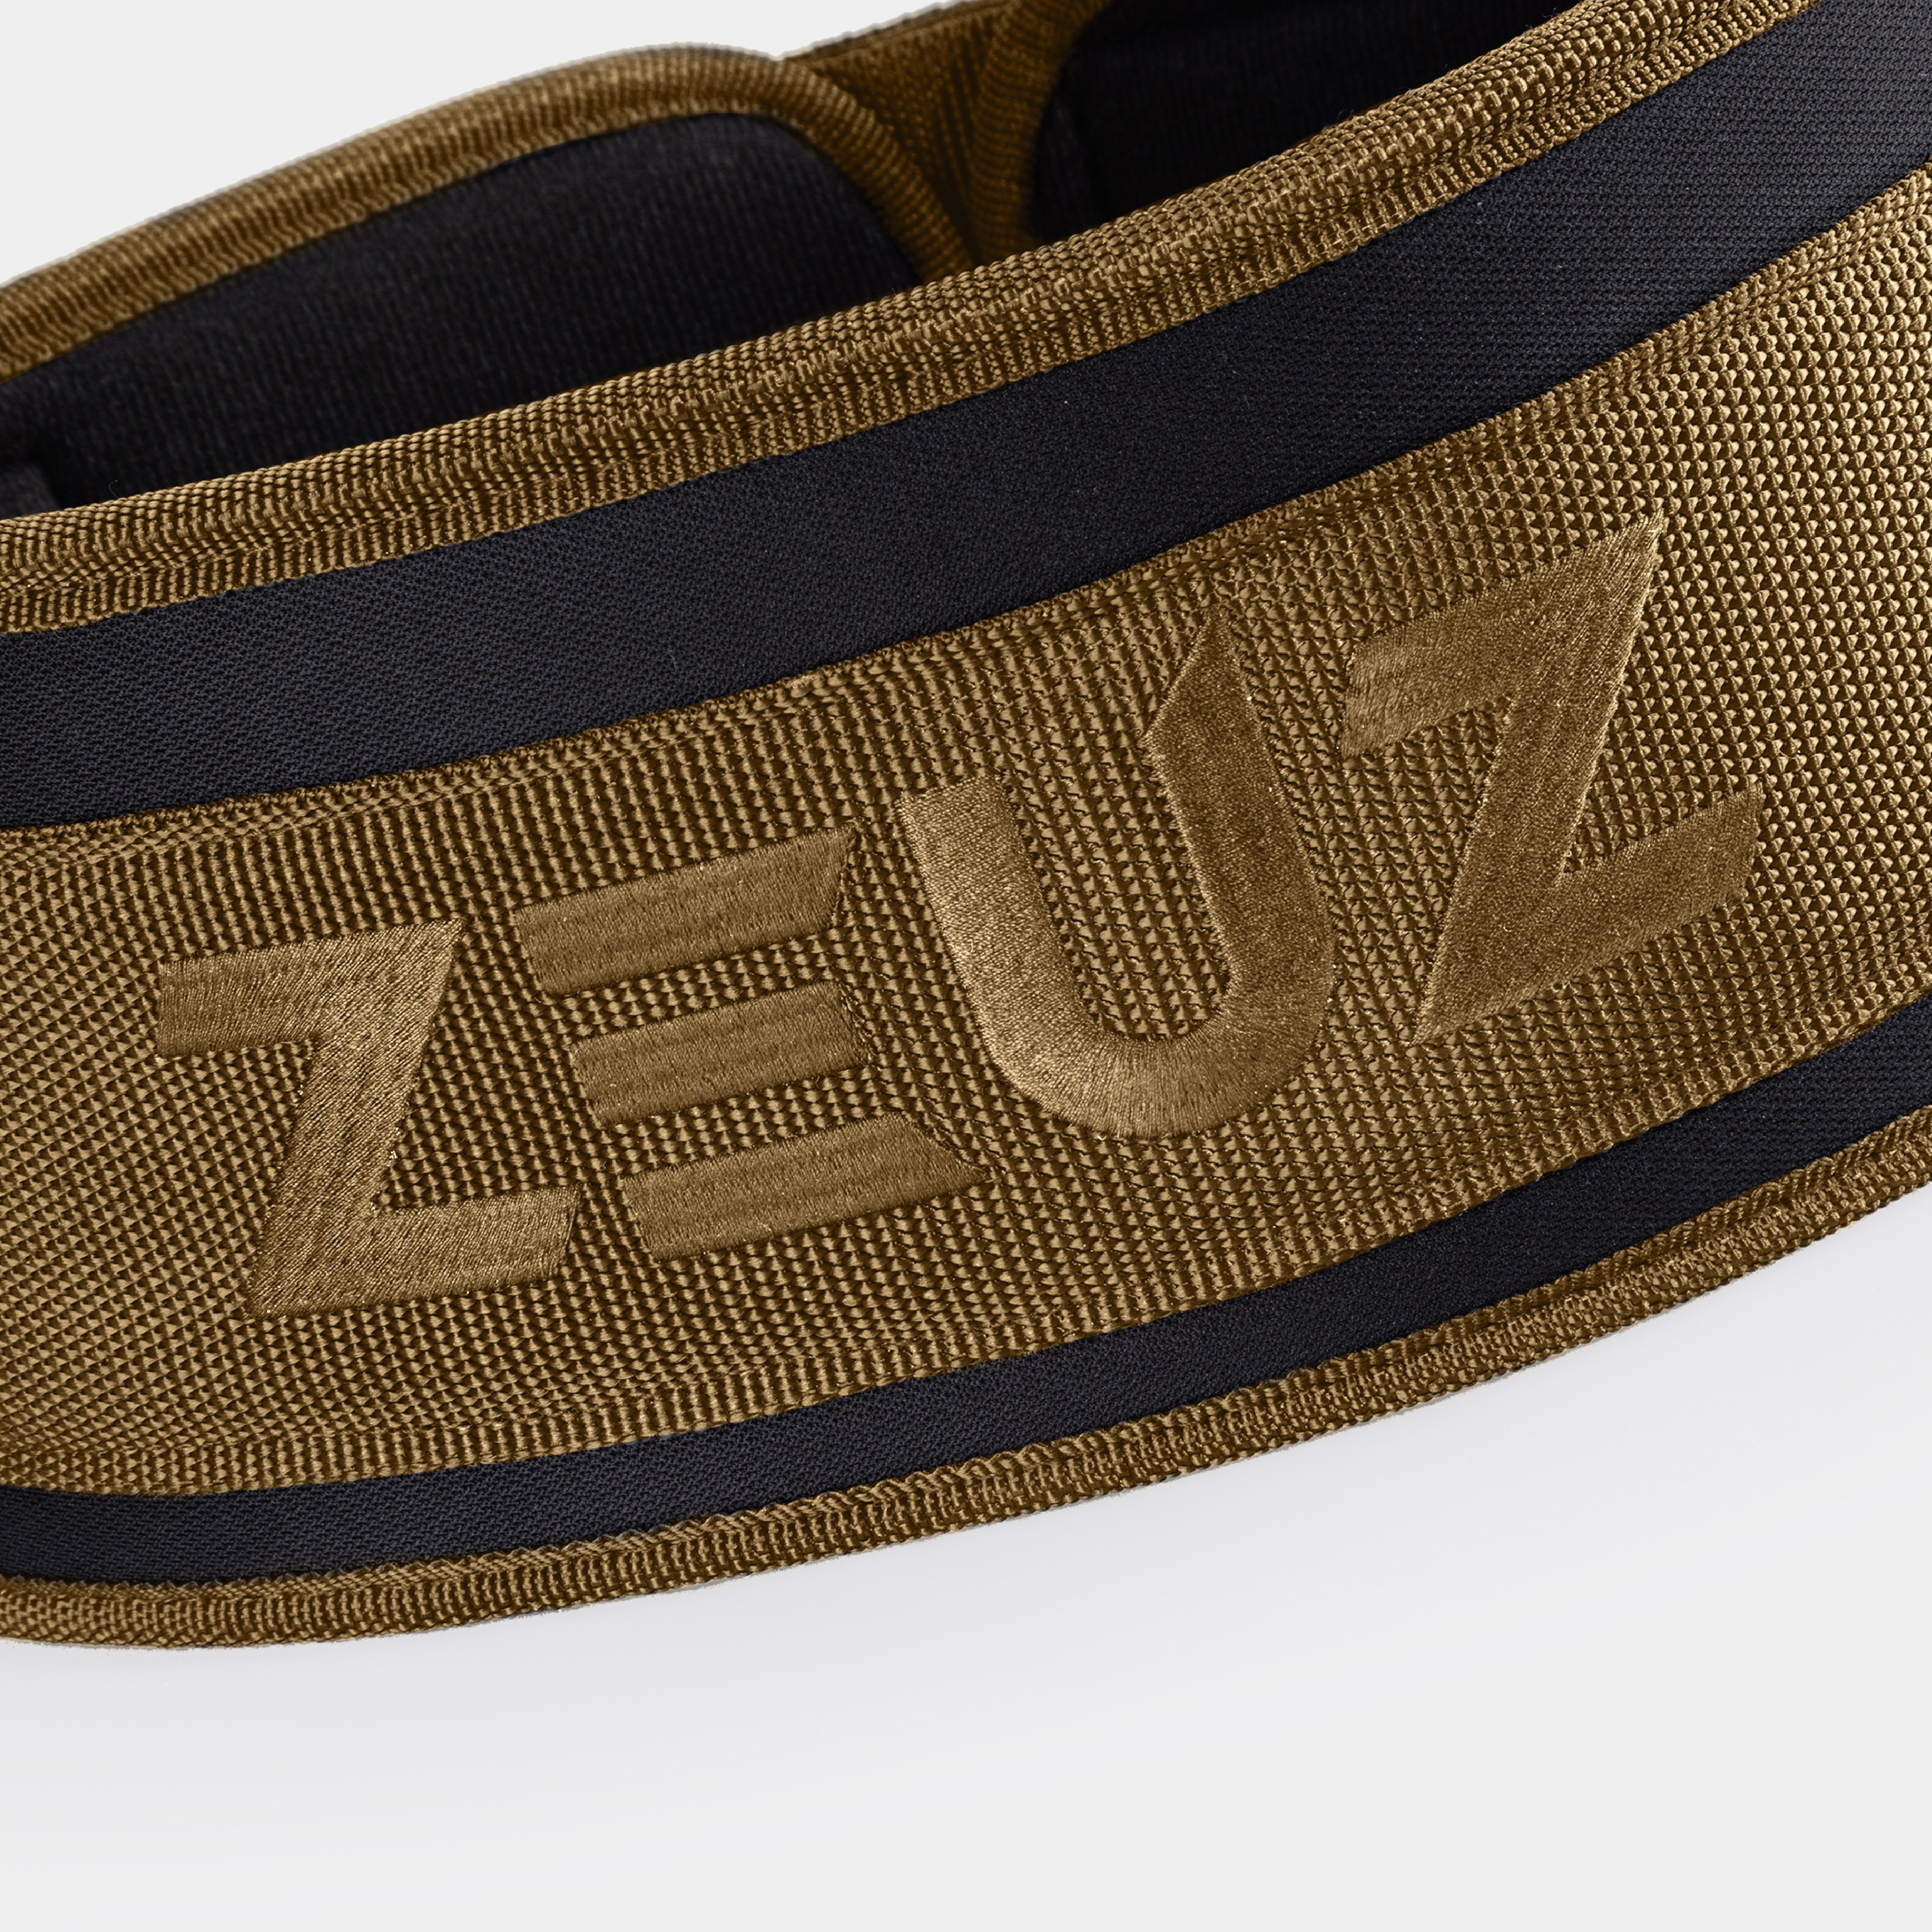 Zokani Self-locking Weight lifting Belt for Men & Women - offering free  Lifting Straps 4” Adjustable Gym Belt Premium weightlifting belt for  Olympic